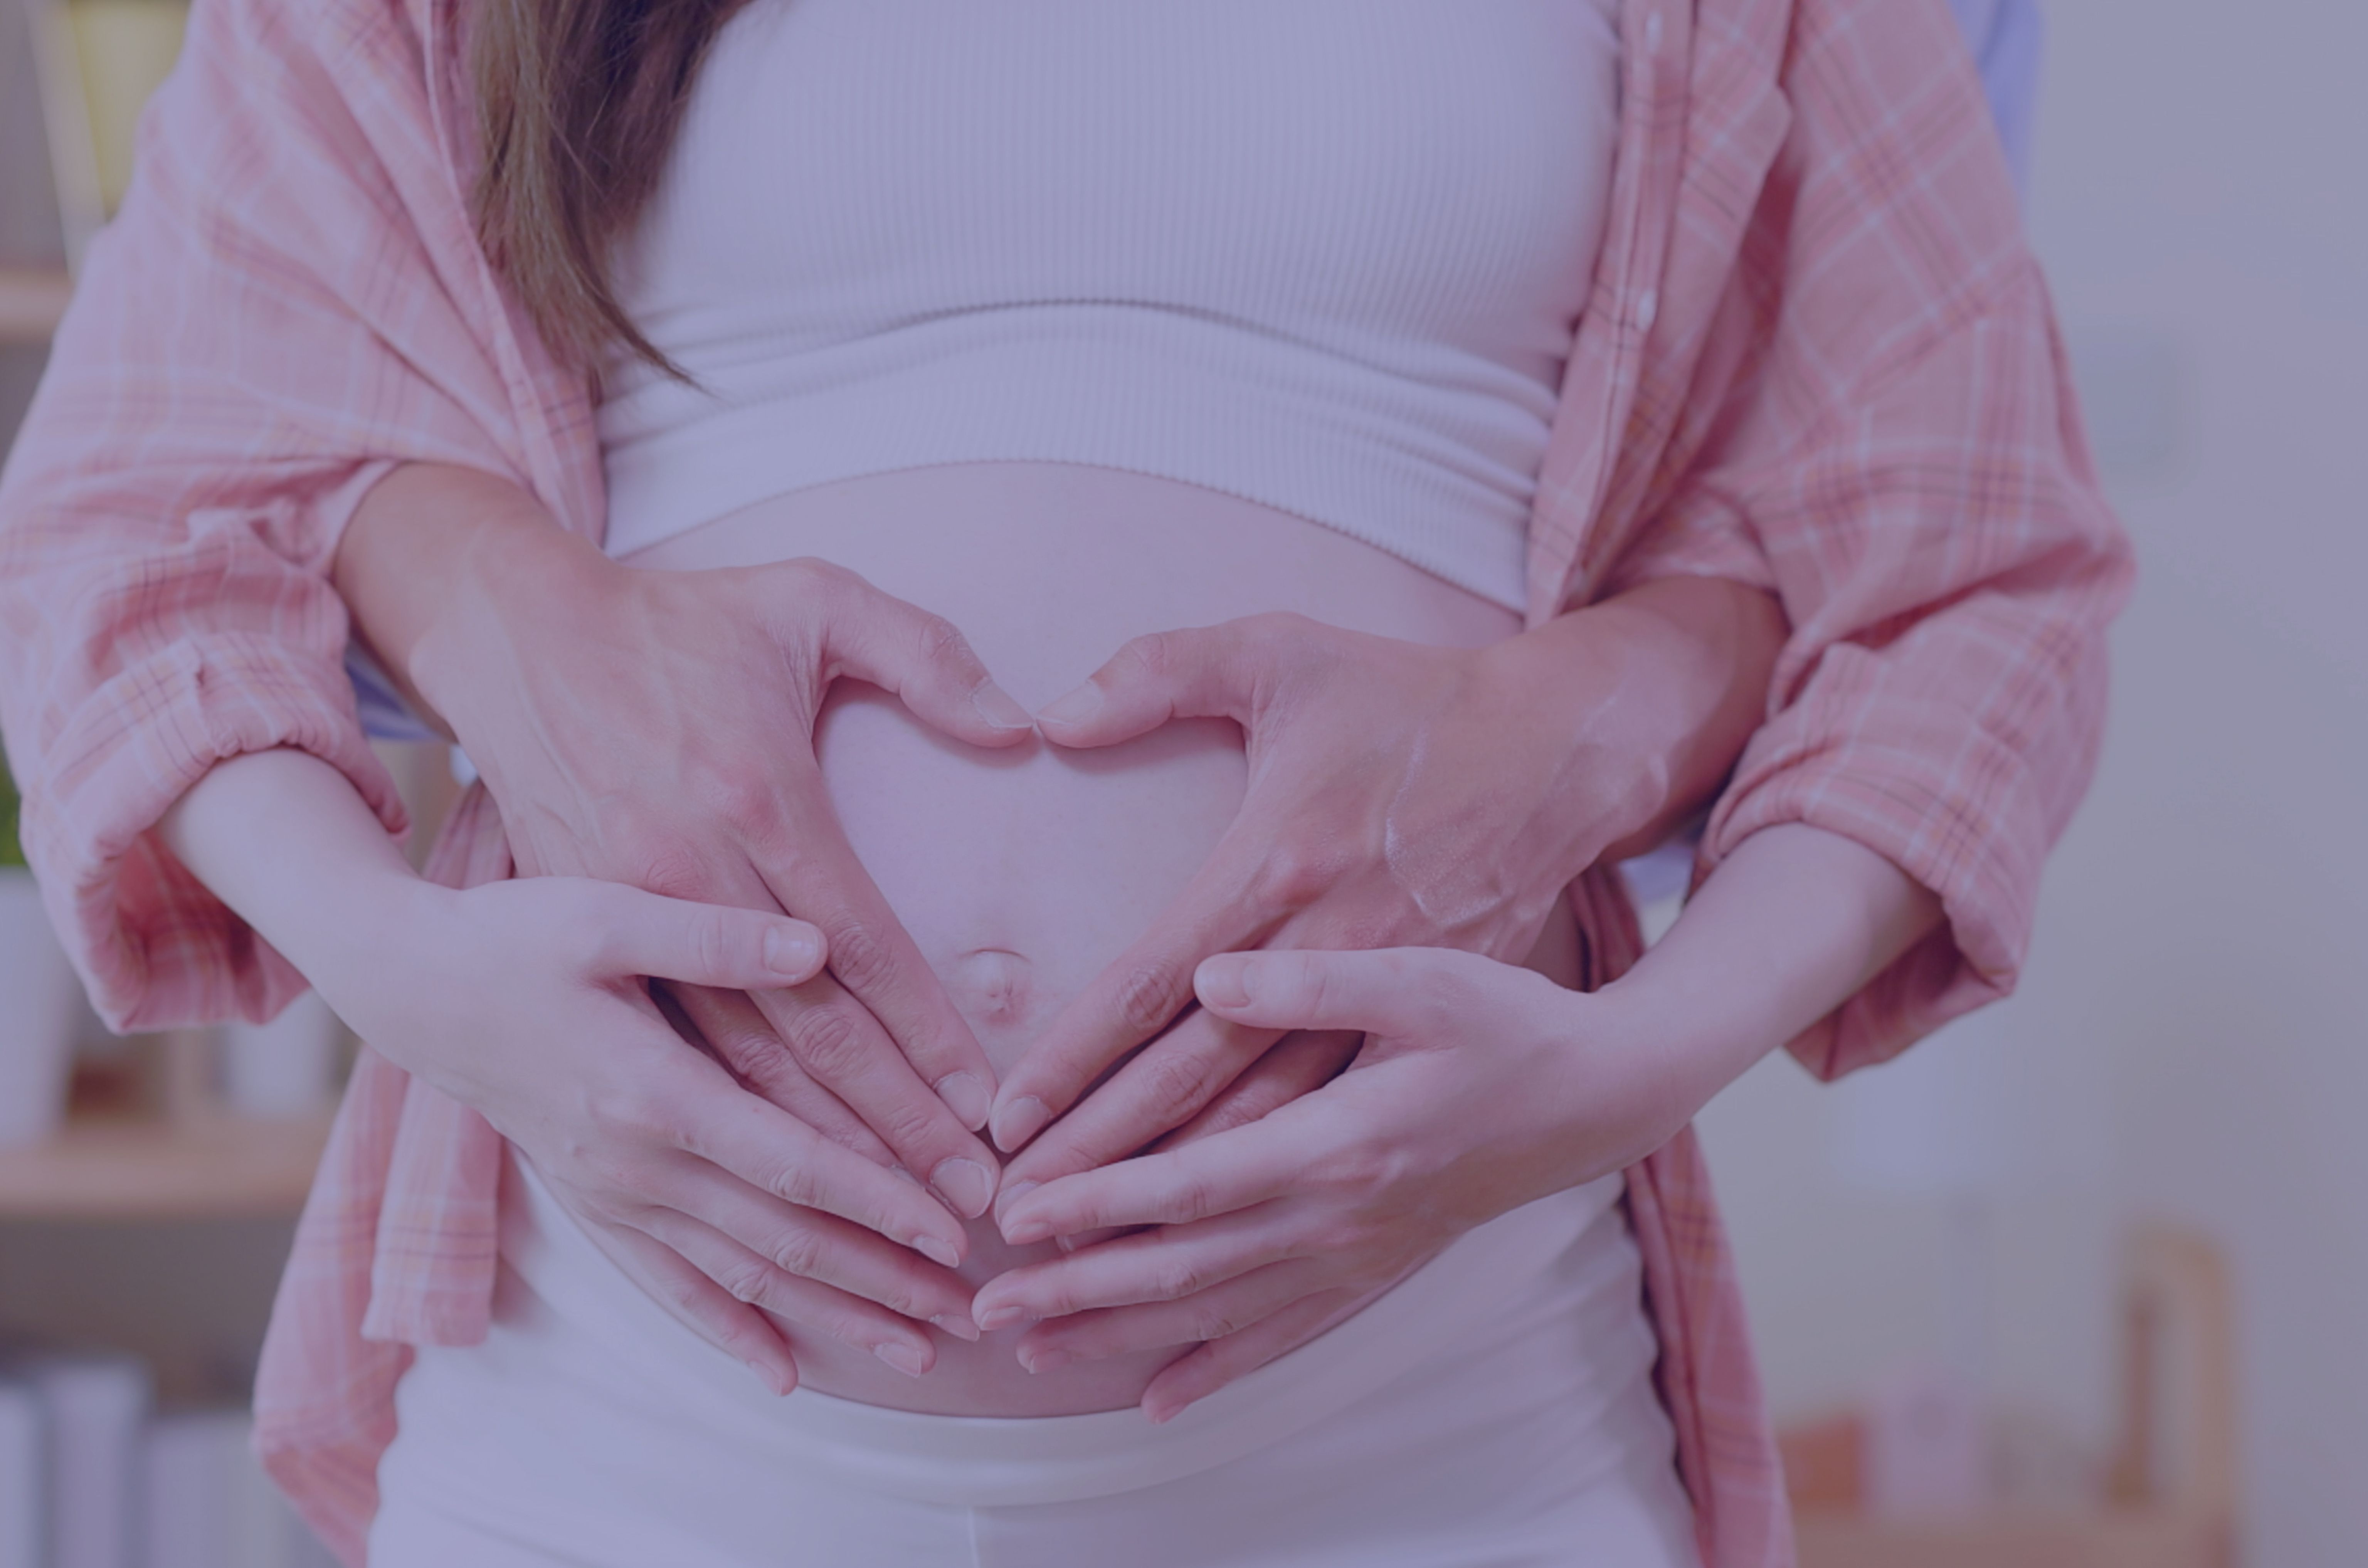 para w ciąży cierpiąca na niepłodność immunologiczną